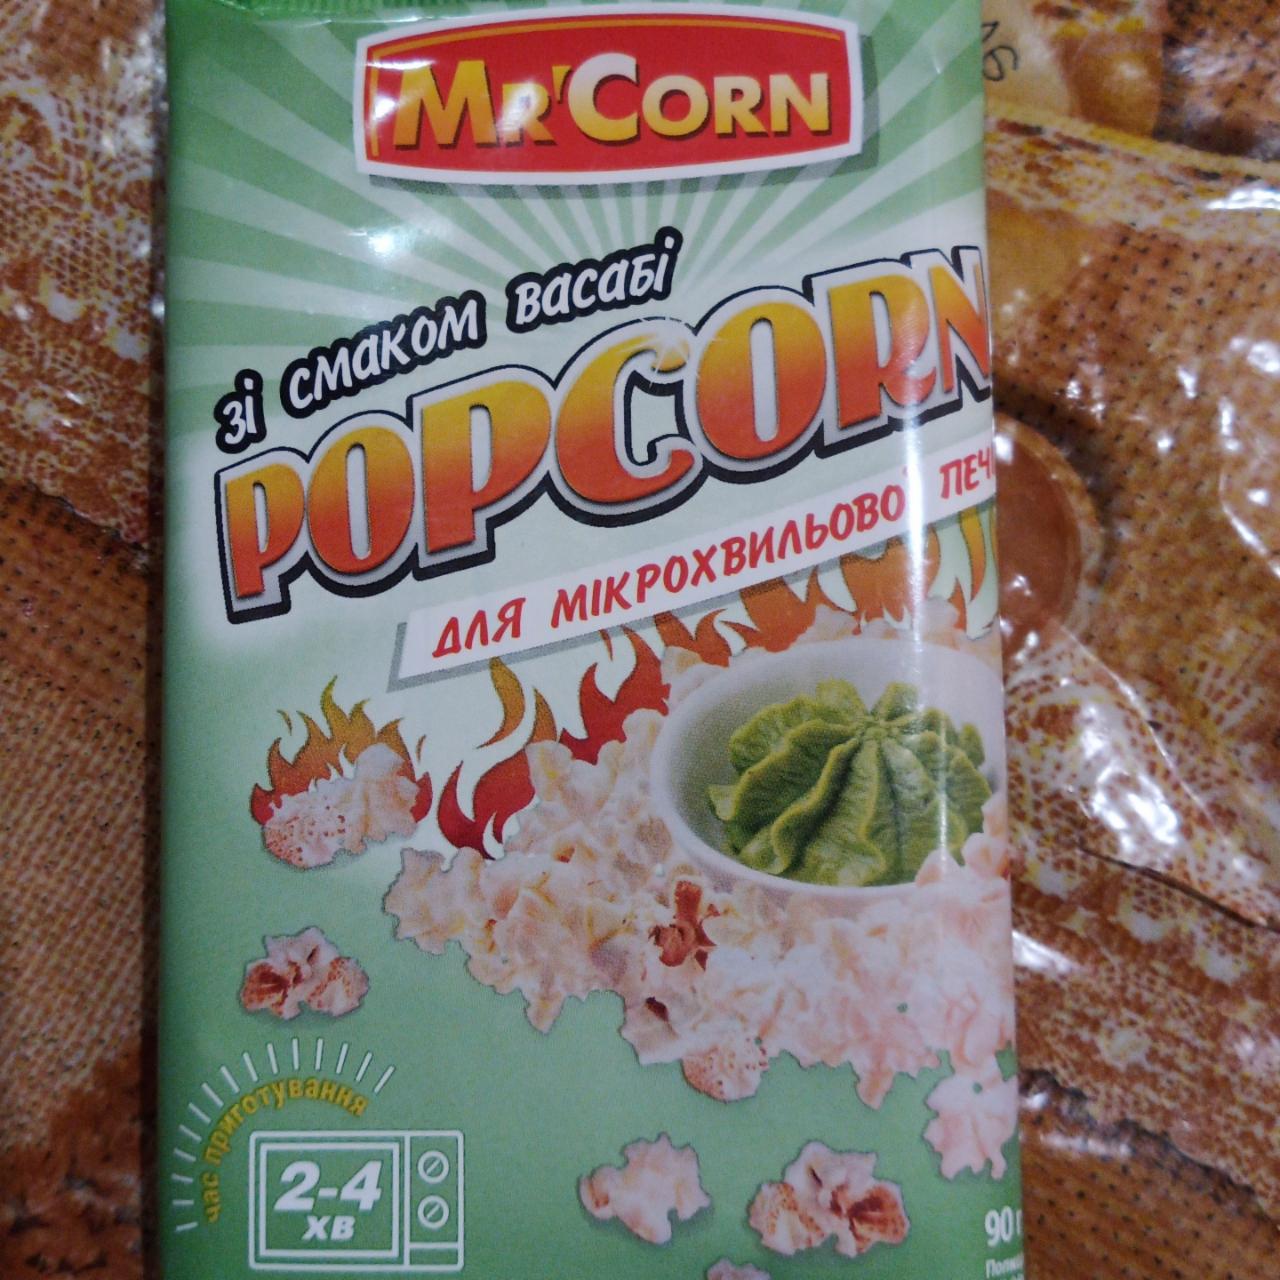 Фото - Попкорн зі смаком васабі Mr'Corn